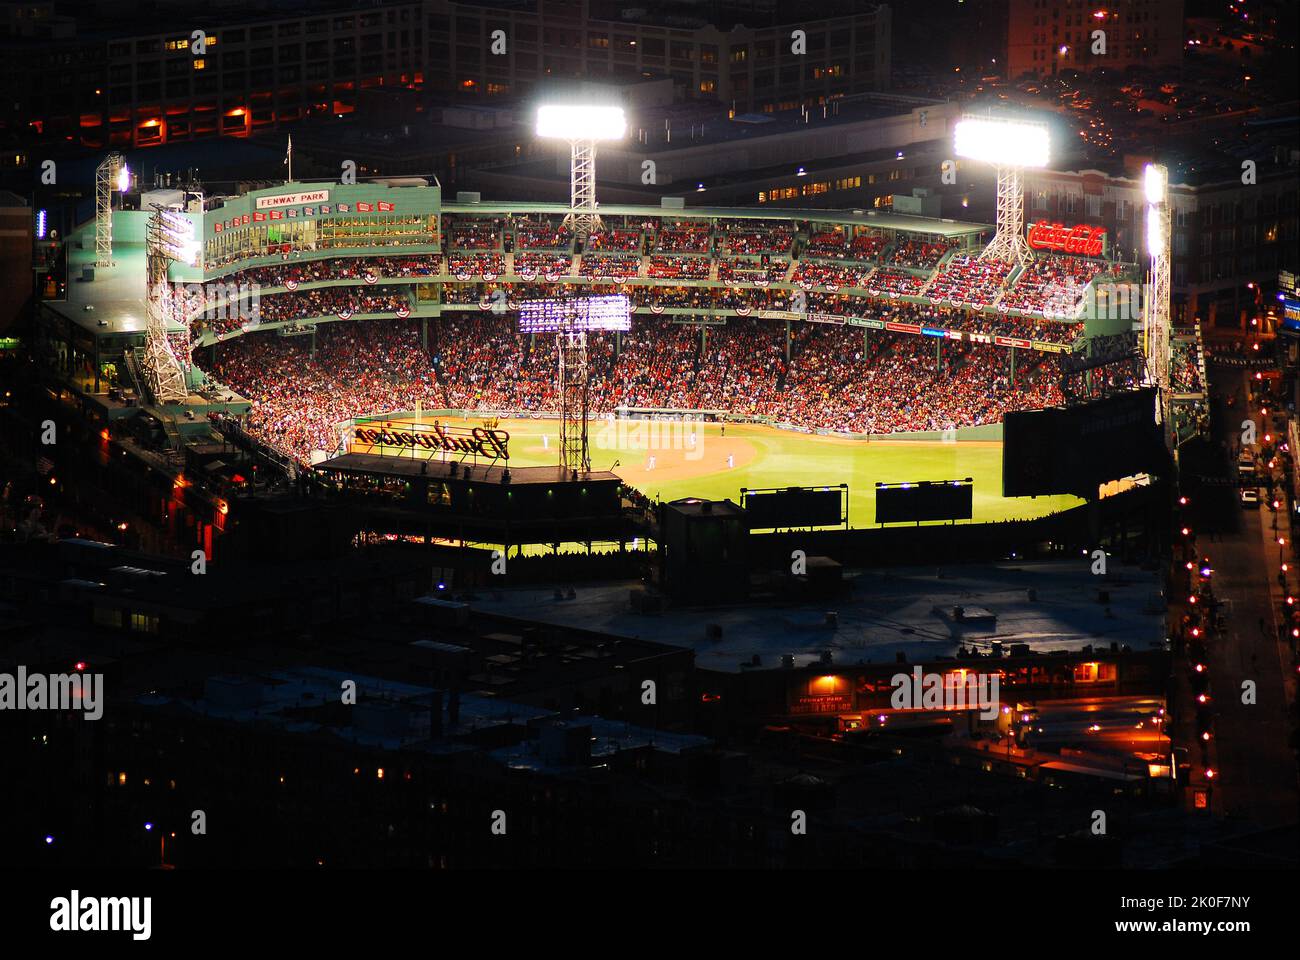 Der Fenway Park ist nachts beleuchtet, während eine große Menge das Baseballteam der Boston Red Sox anfeuert Stockfoto